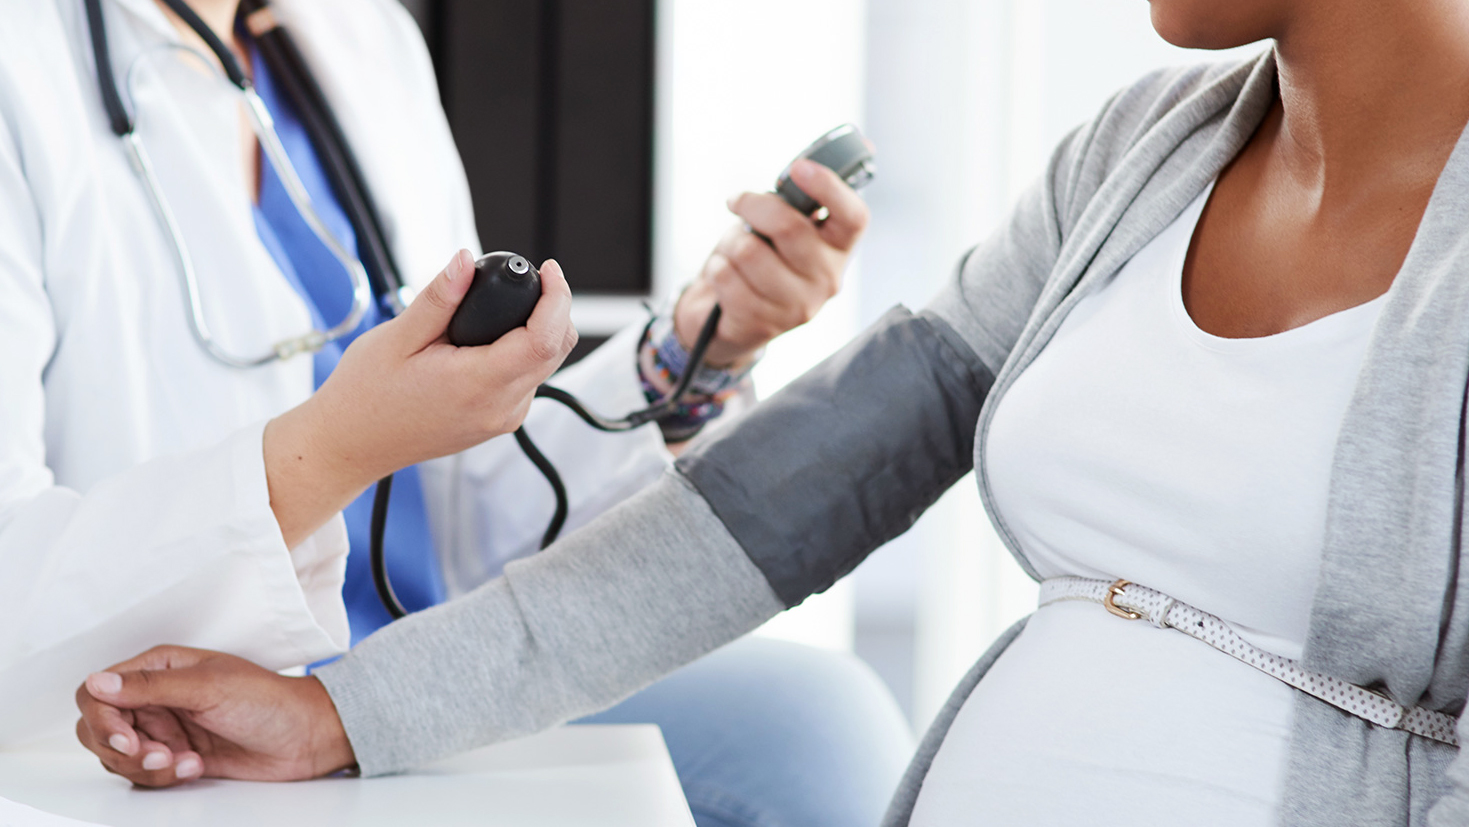 La hipertensión durante el embarazo aumenta el riesgo de sufrir enfermedades cardiovasculares